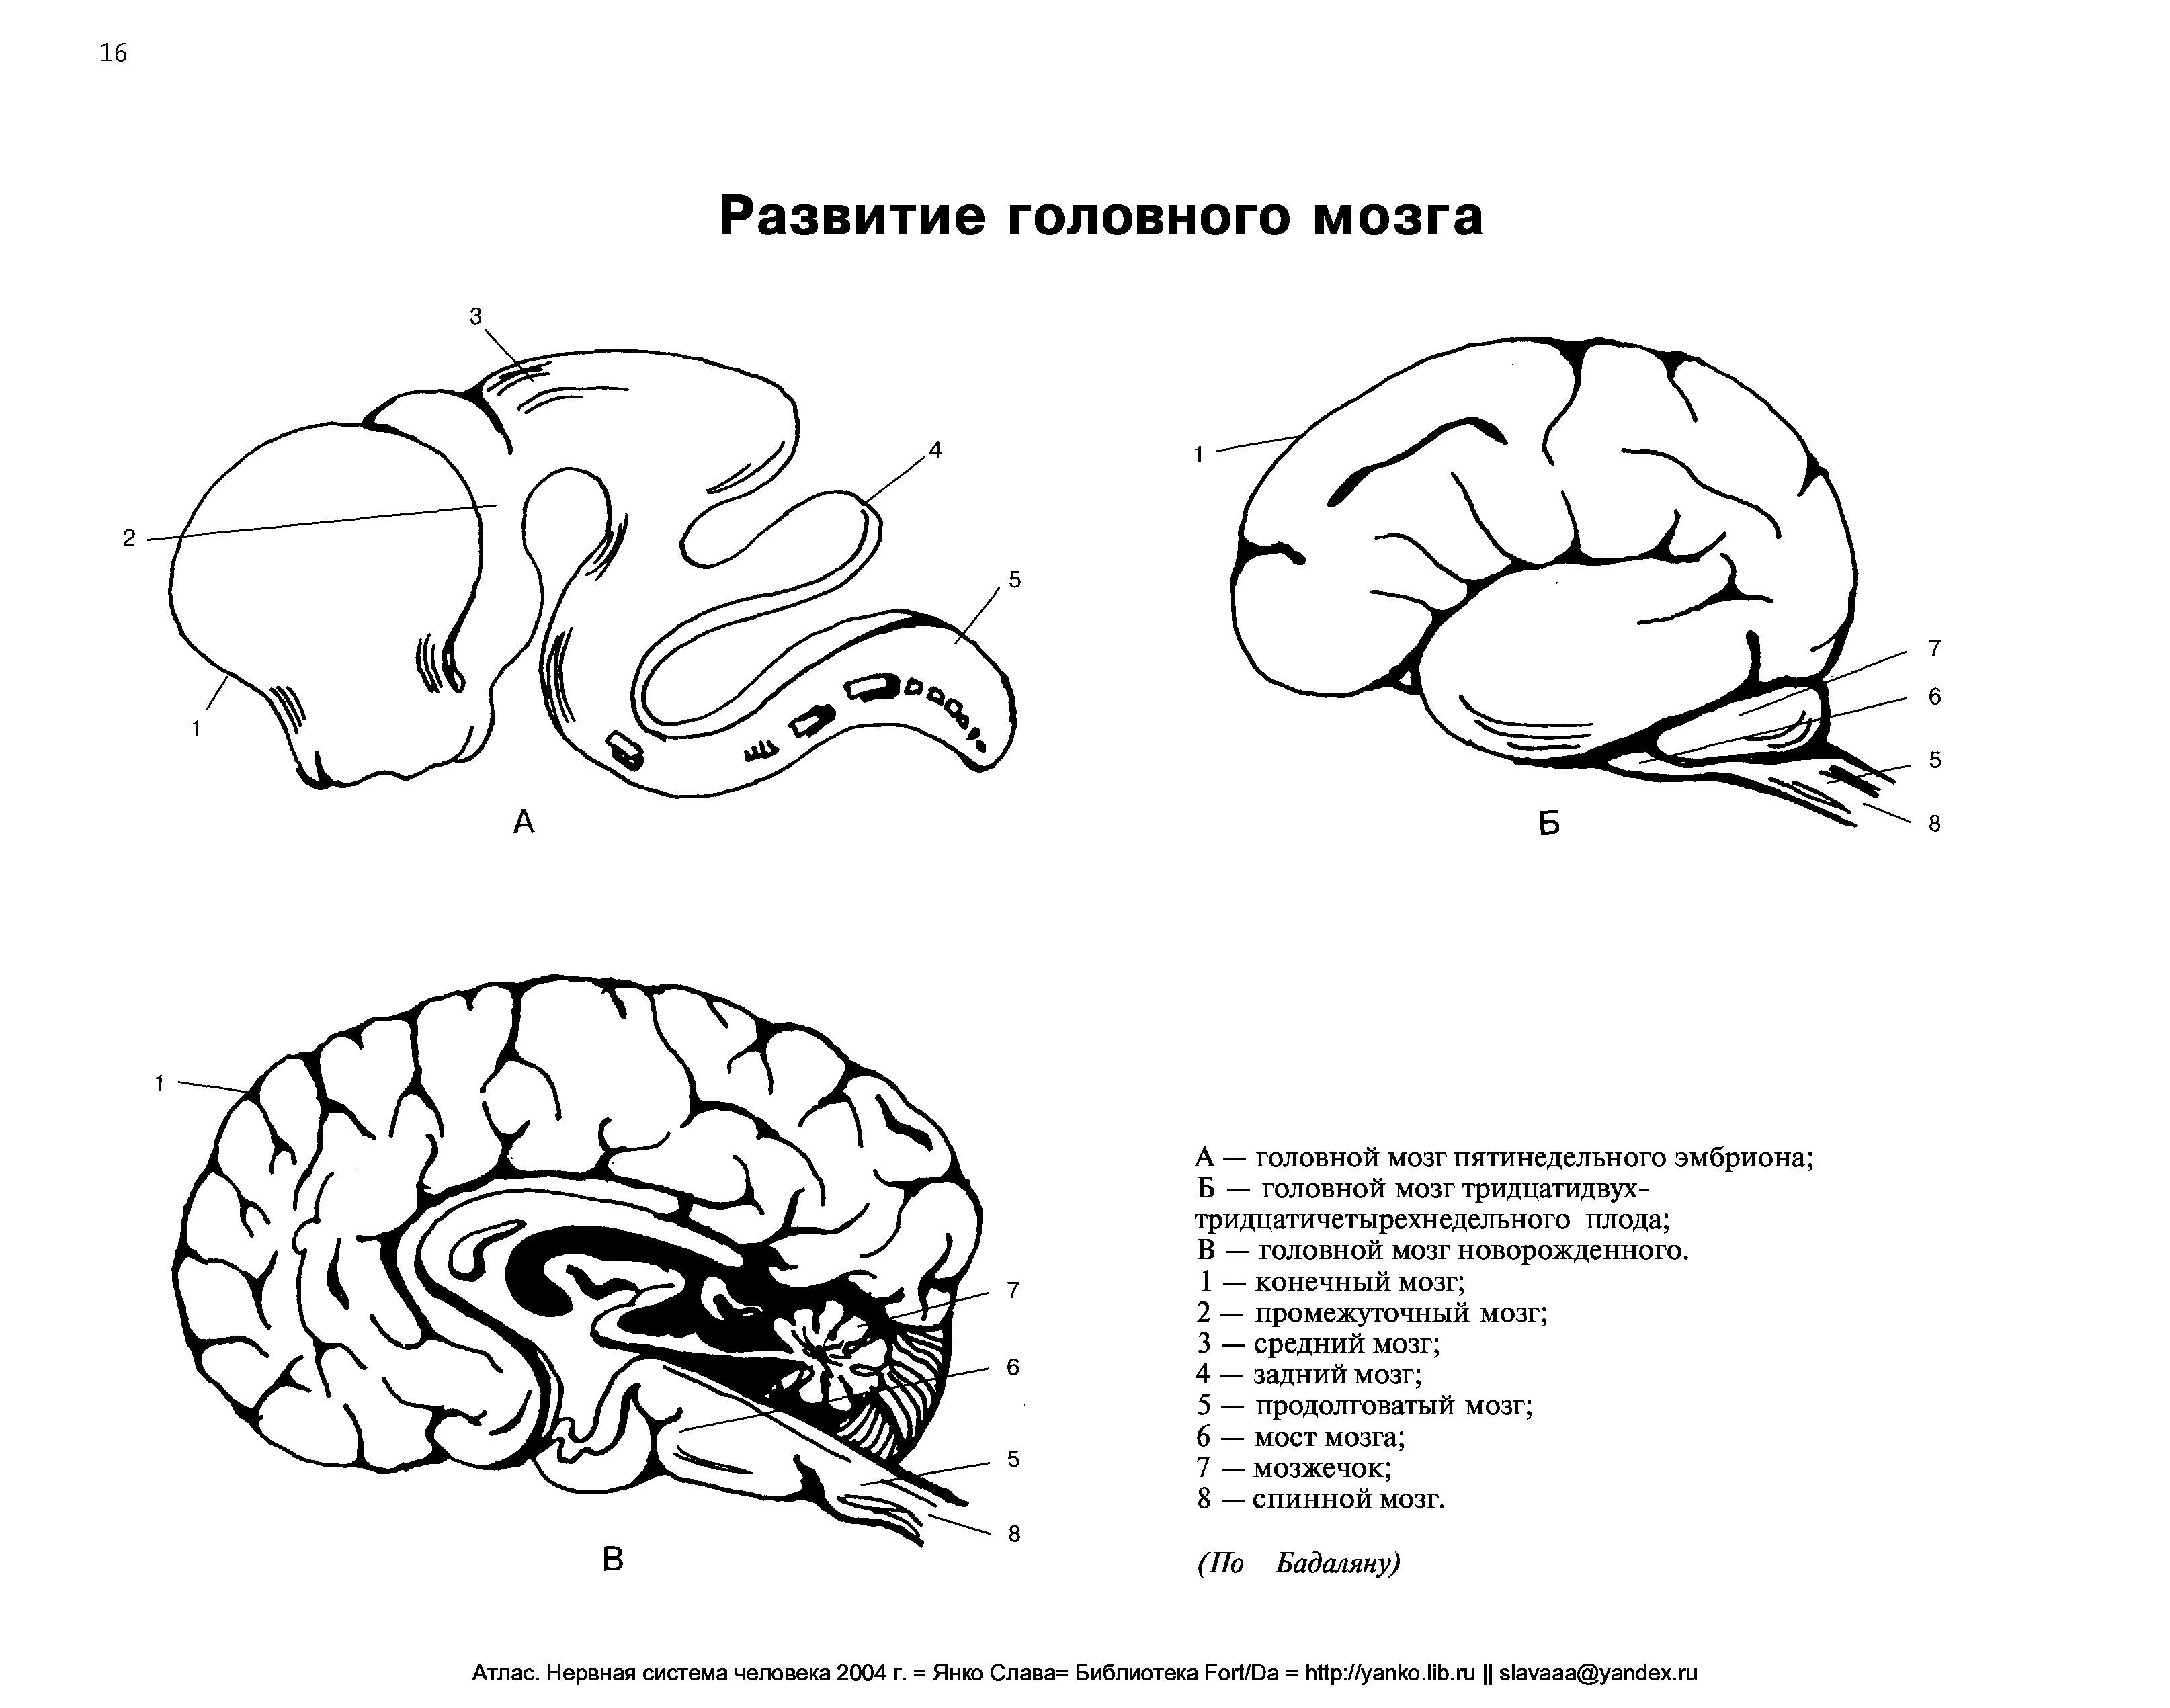 Эмбриогенез мозга человека. Схему развития головного мозга человека. Схема развития головного мозга человека Сагиттальный разрез. Схема развития головного мозга фронтальный разрез. Эмбриональное развитие головного мозга.